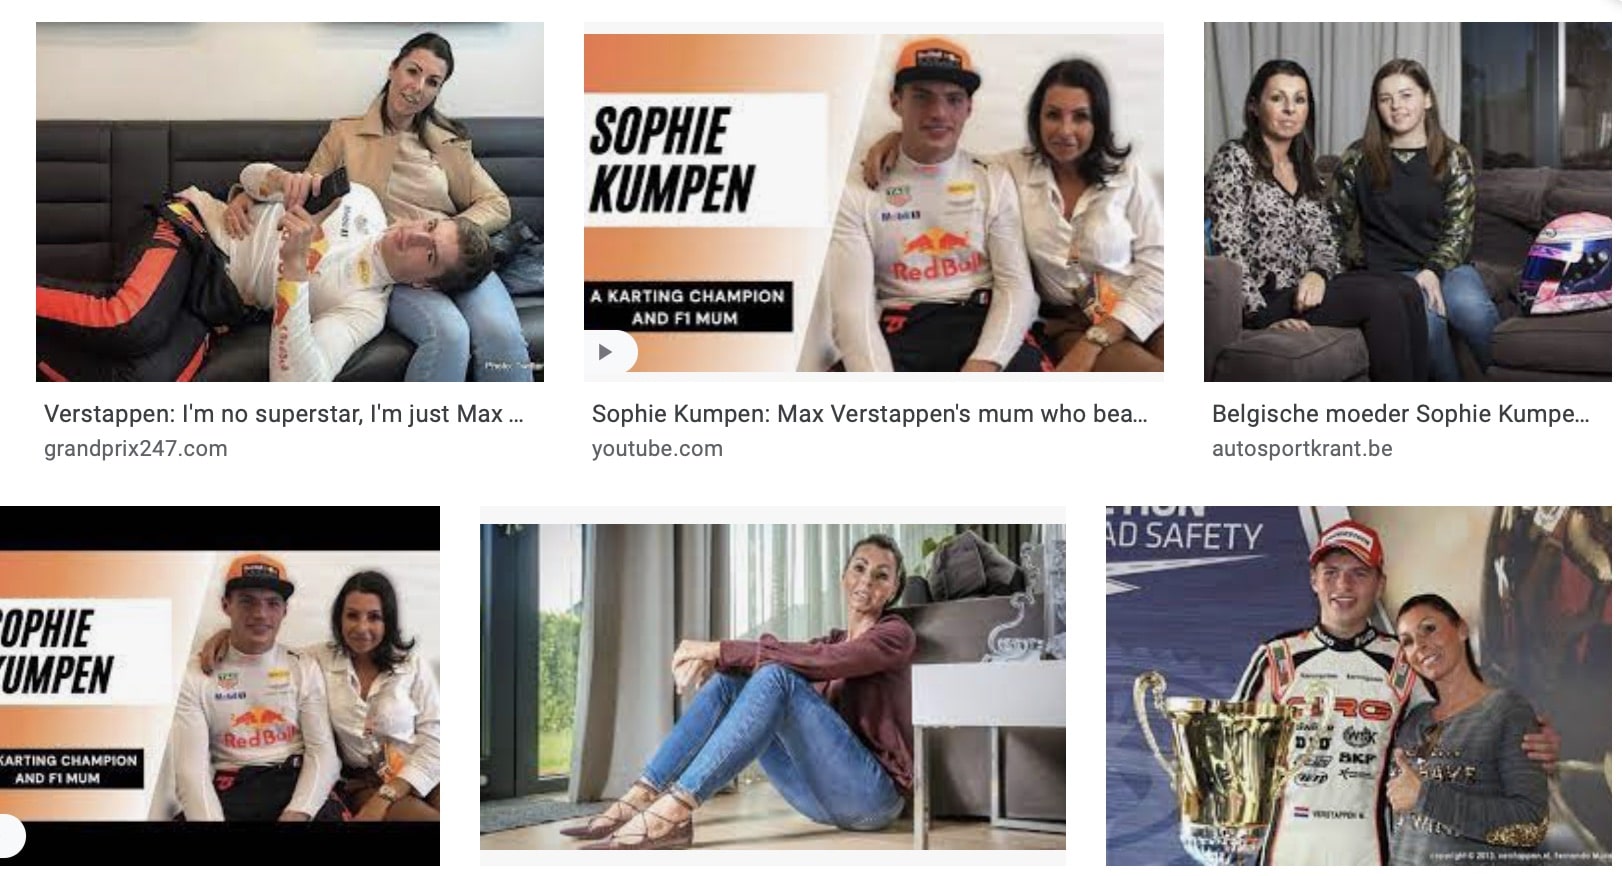 Je bekijkt nu Sophie Kumpen, de moeder van Max Verstappen is ze vaak in het nieuws